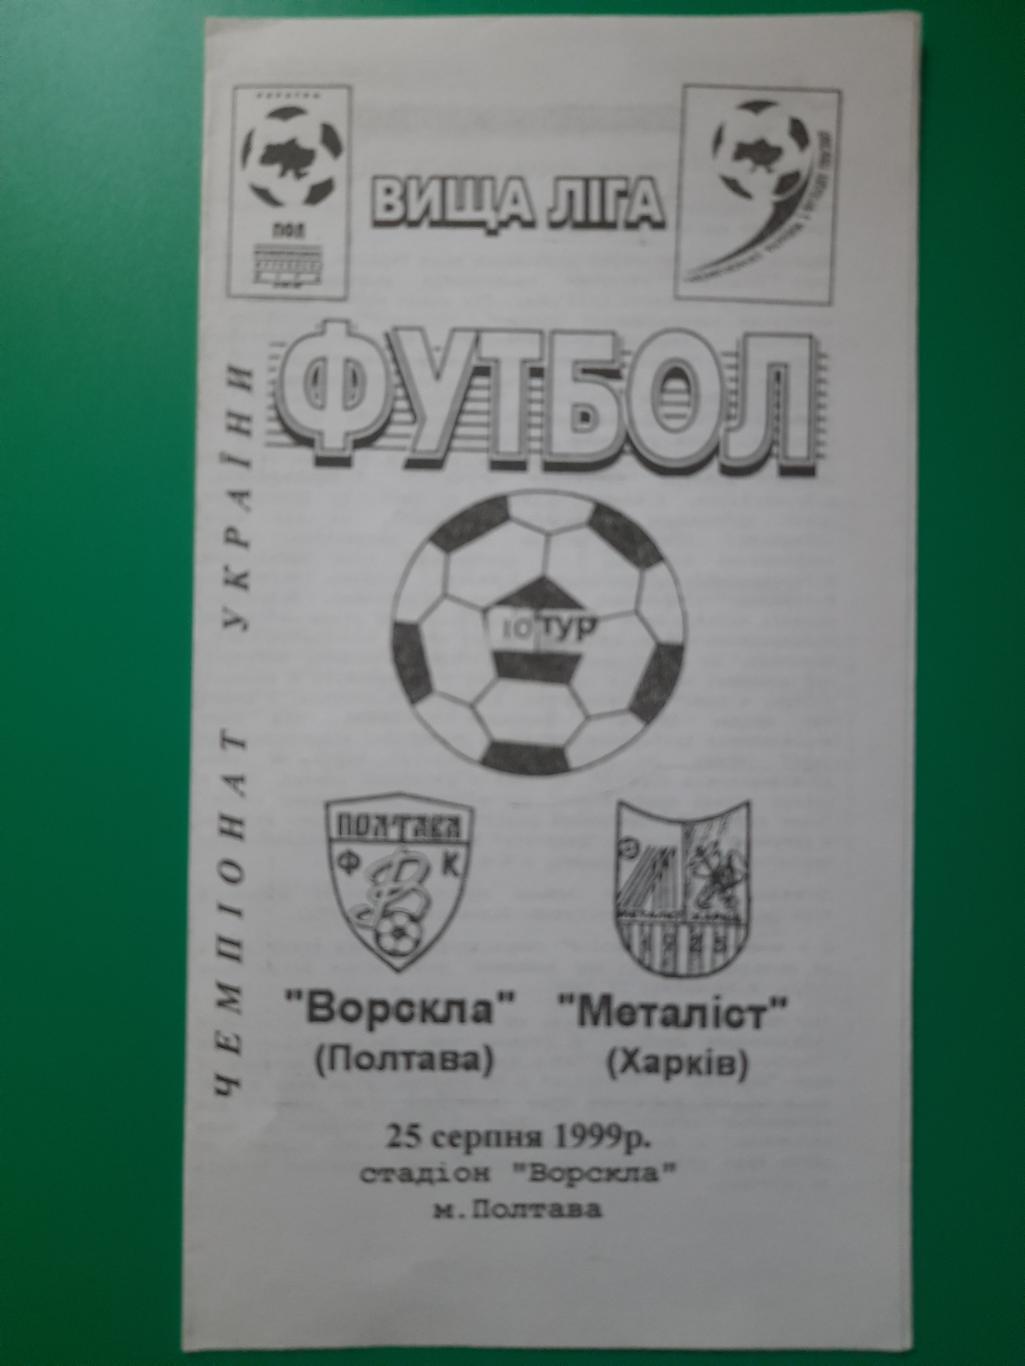 Ворскла Полтава - Металлист Харьков 25.08.1999